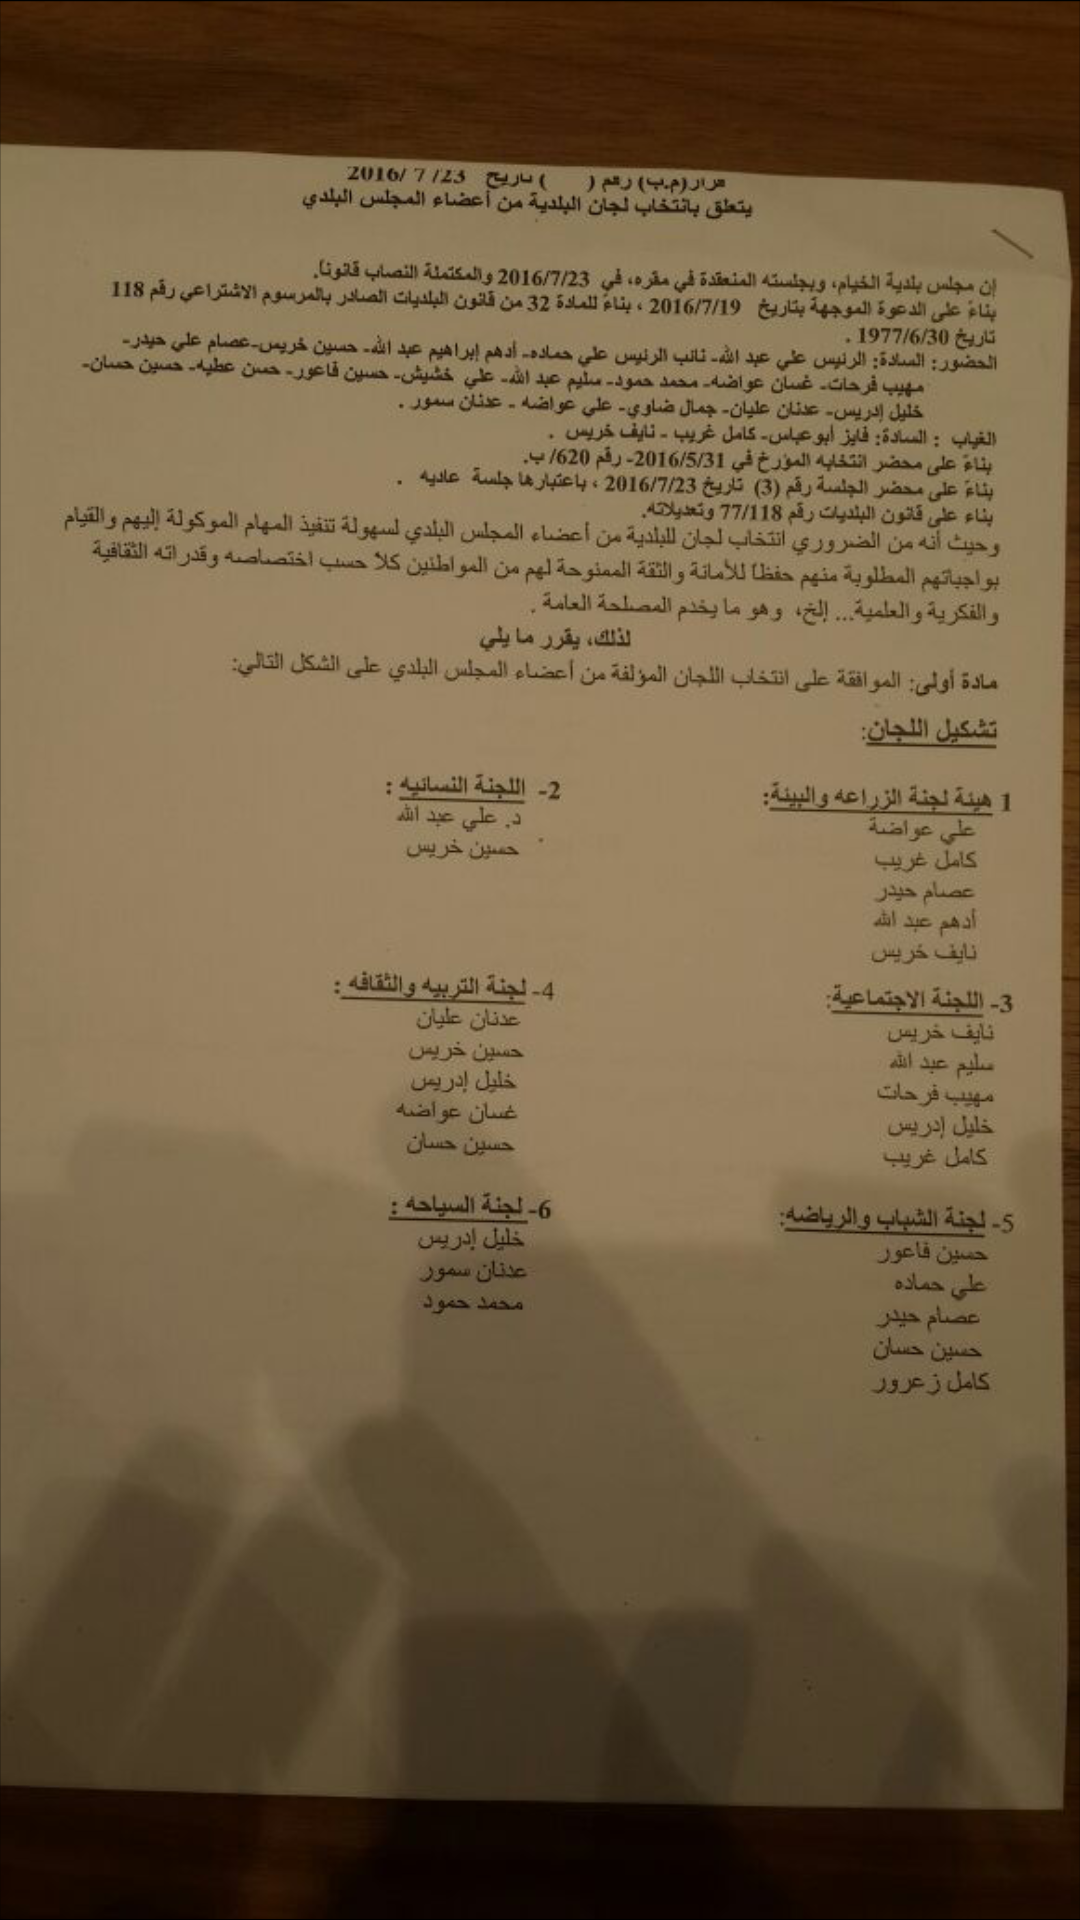 أسماء أعضاء لجان بلدية الخيام المغيّبة